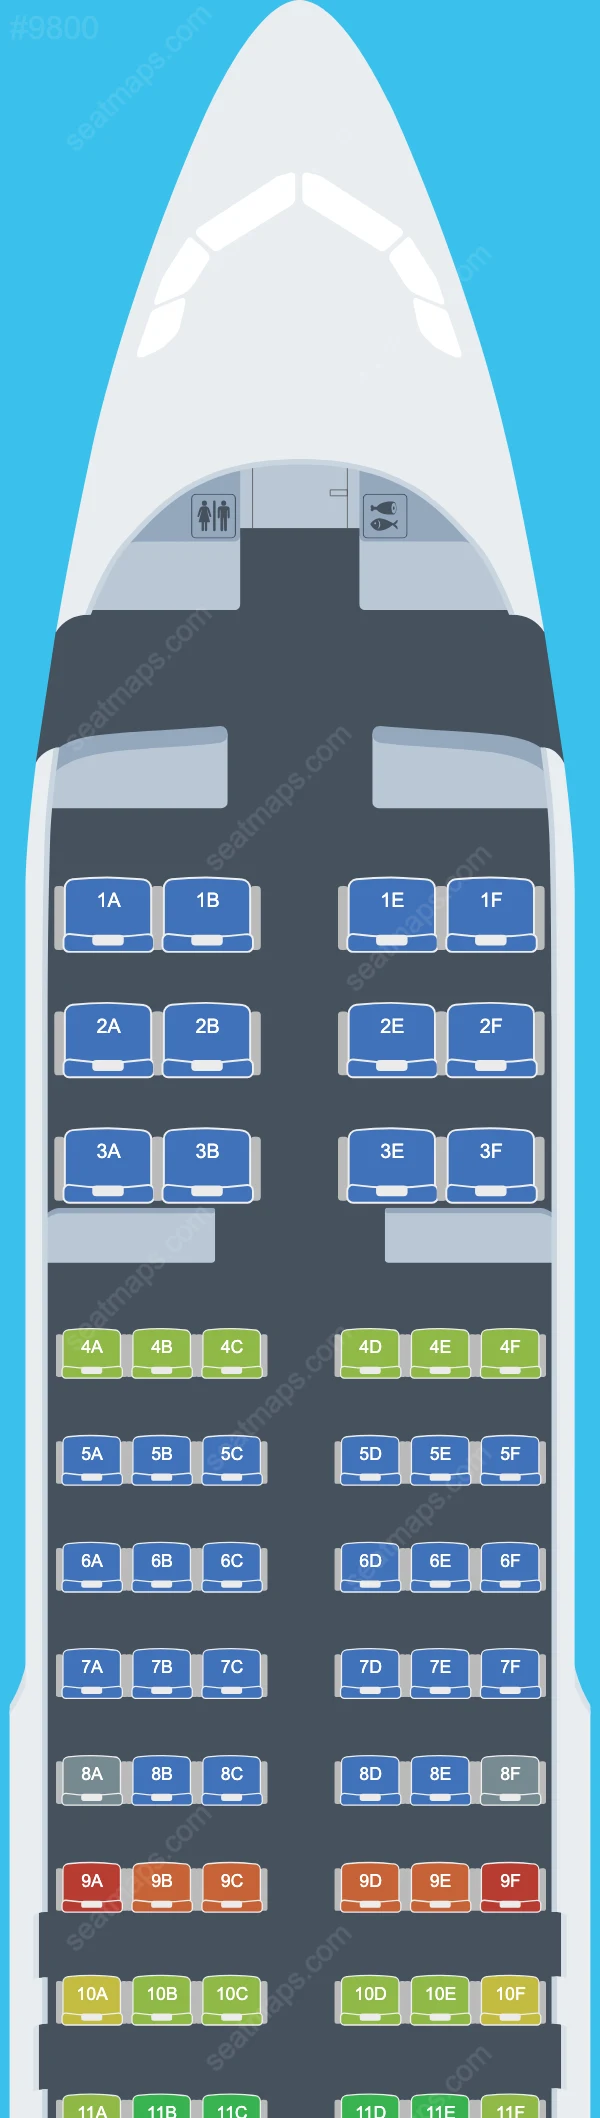 Uzbekistan Airways Airbus A320 Seat Maps A320-200neo